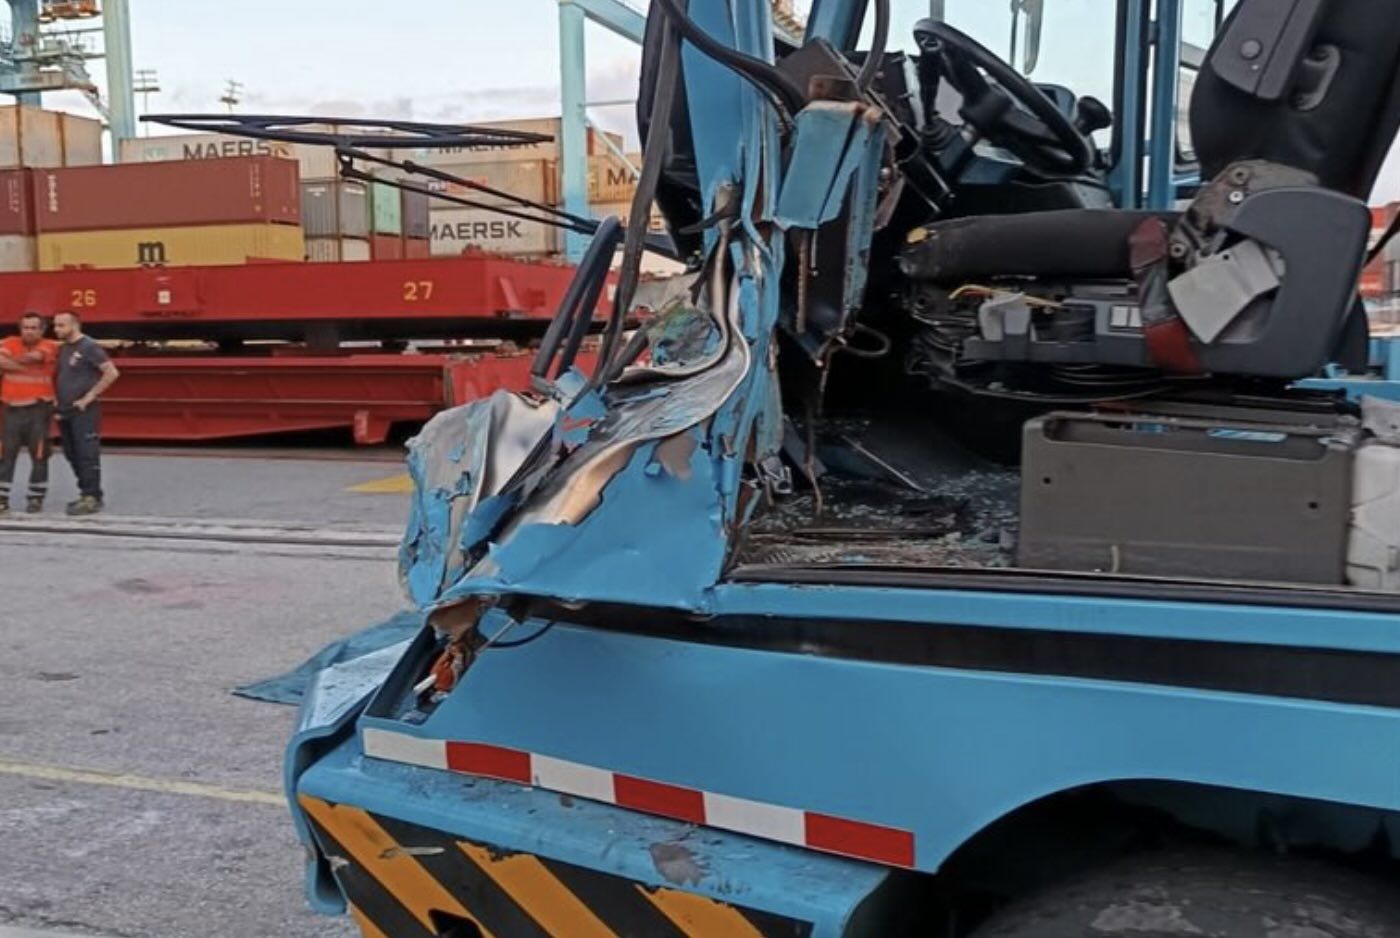 Chocan dos máquinas de transporte en el Puerto de Algeciras: atrapado el pie de uno de los conductores.